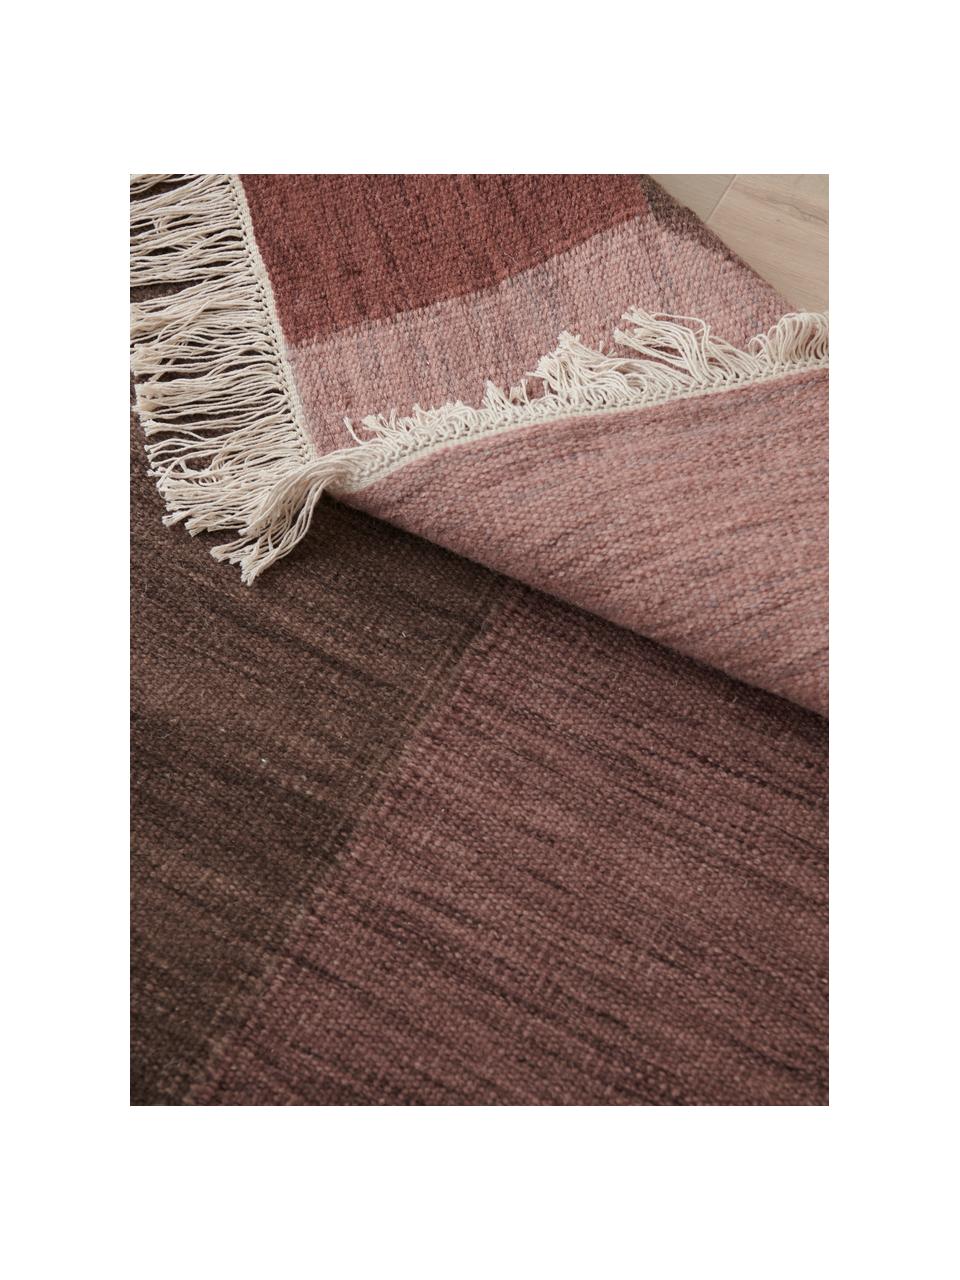 Ručně tkaný vlněný koberec Olbia, 100 % vlna

V prvních týdnech používání vlněných koberců se může objevit charakteristický jev uvolňování vláken, který po několika týdnech používání zmizí., Více barev, Š 140 cm